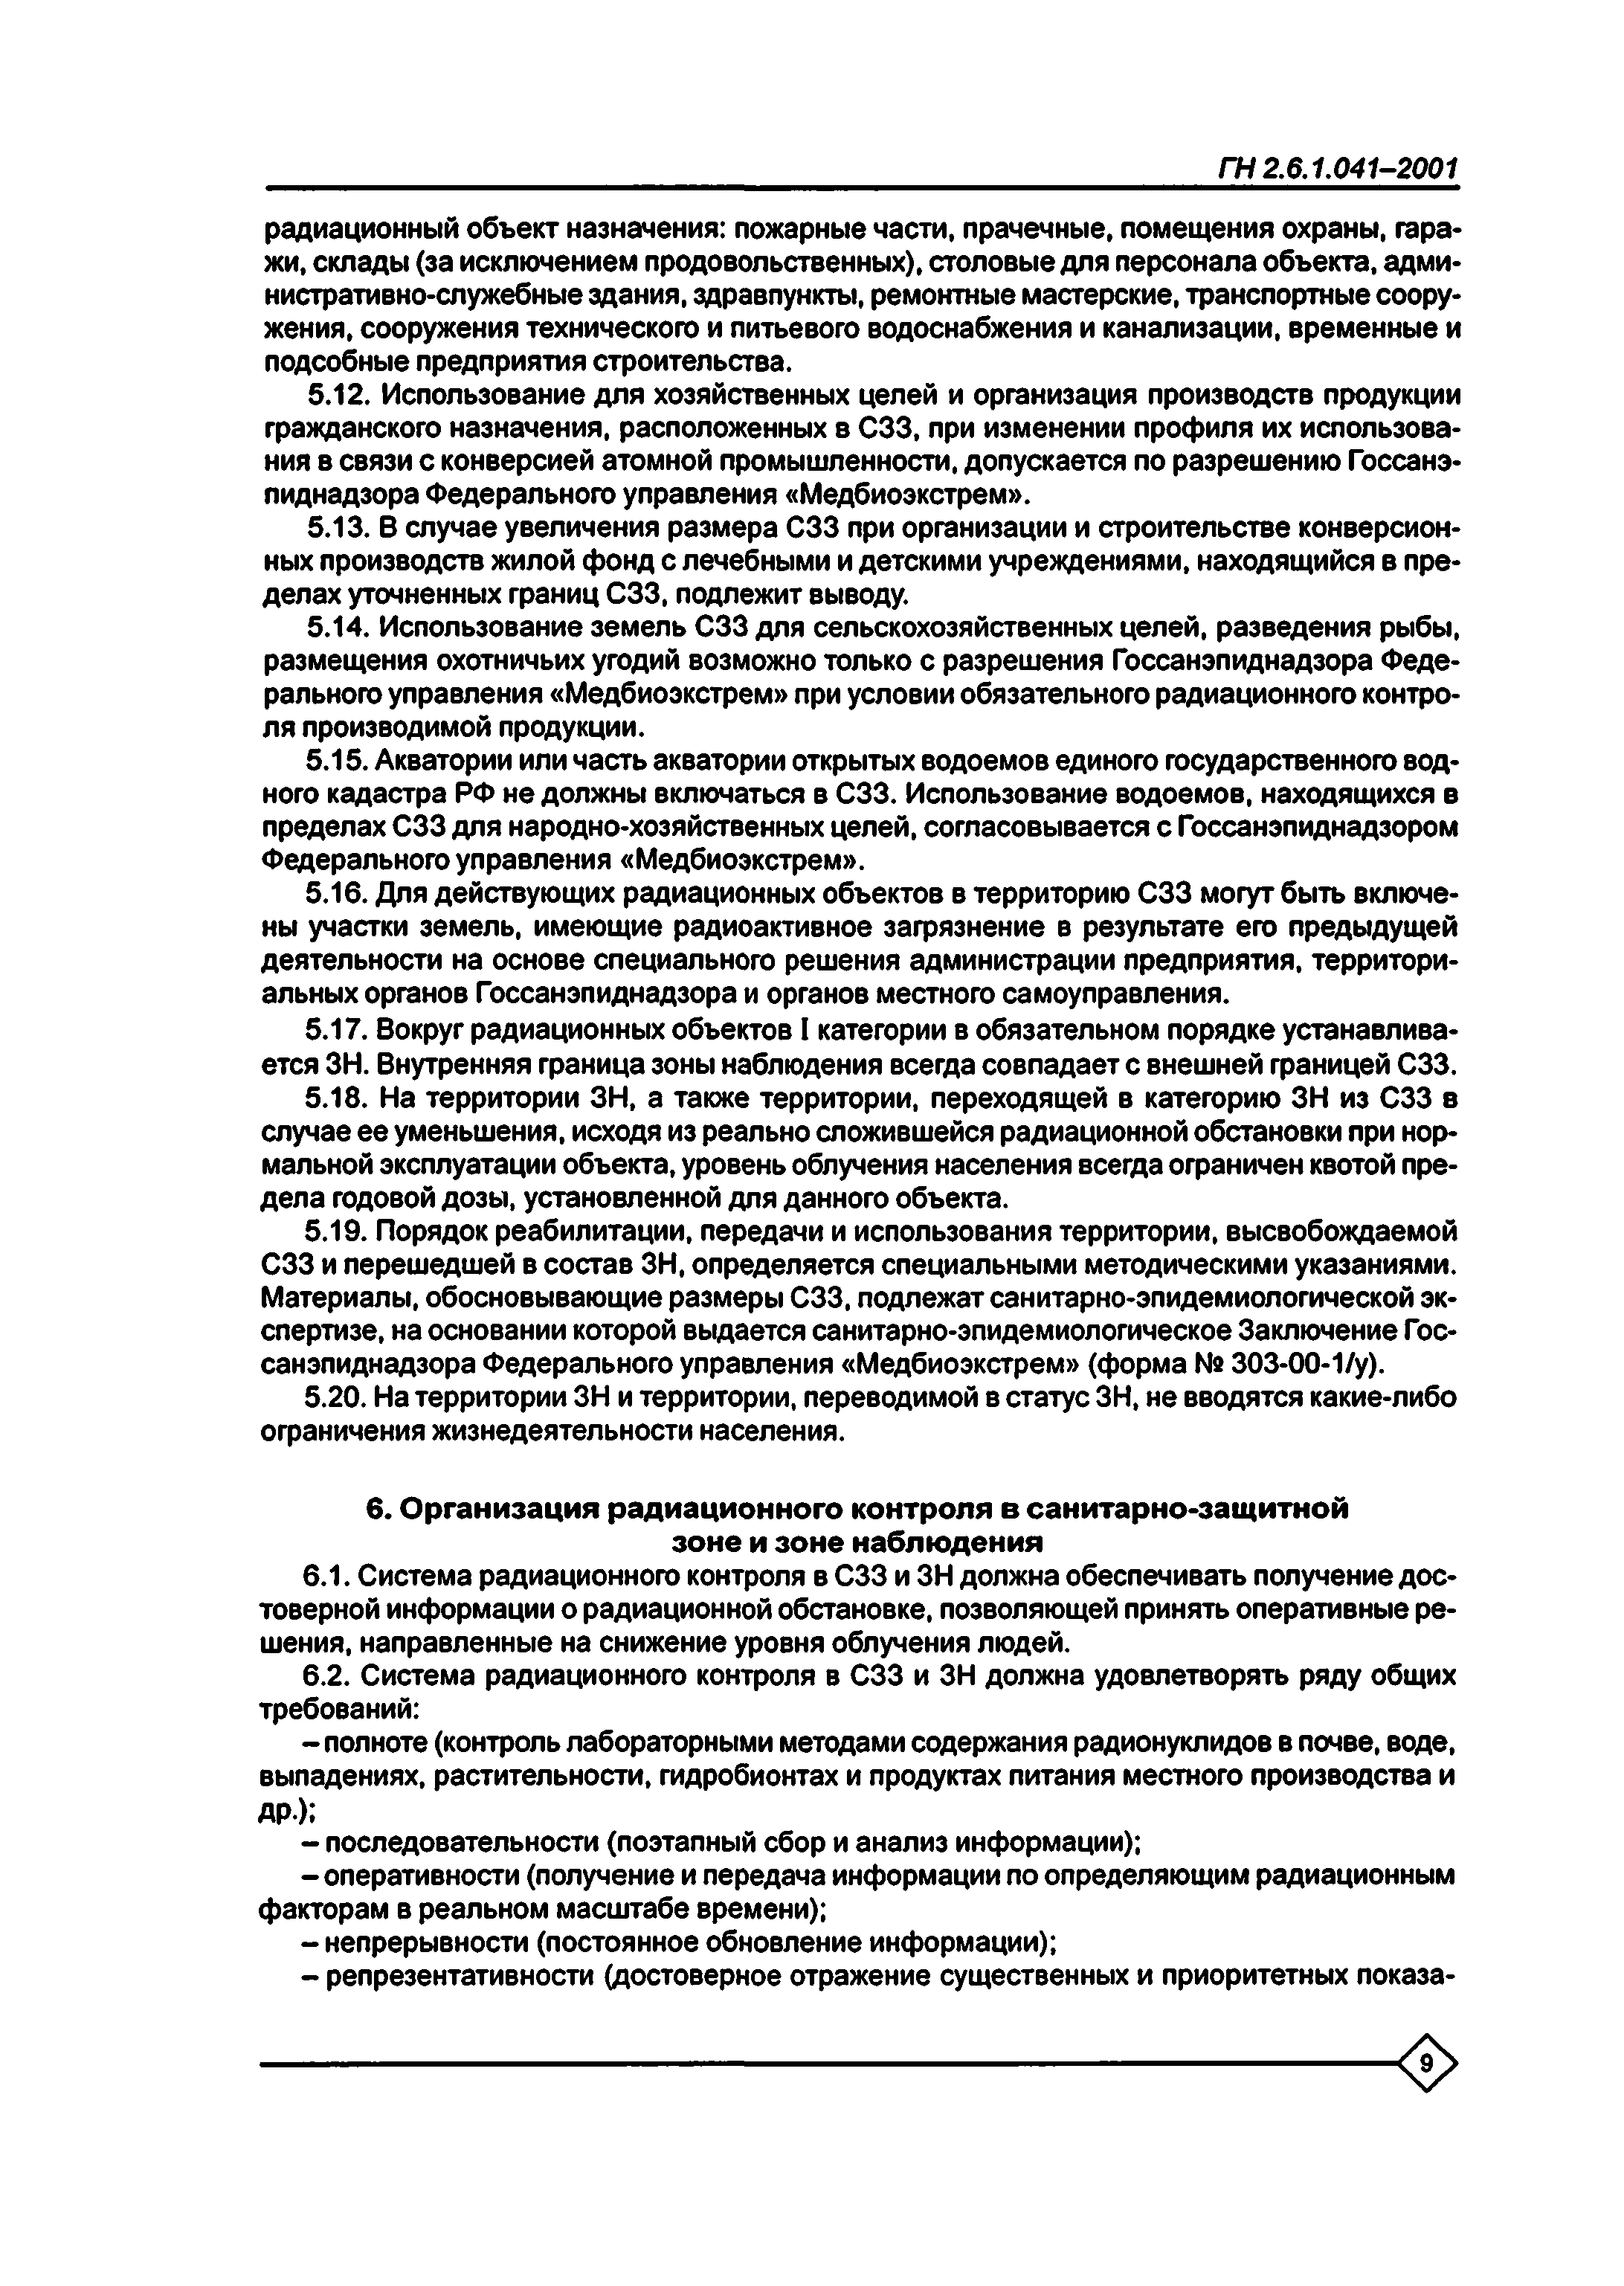 ГН 2.6.1.041-2001